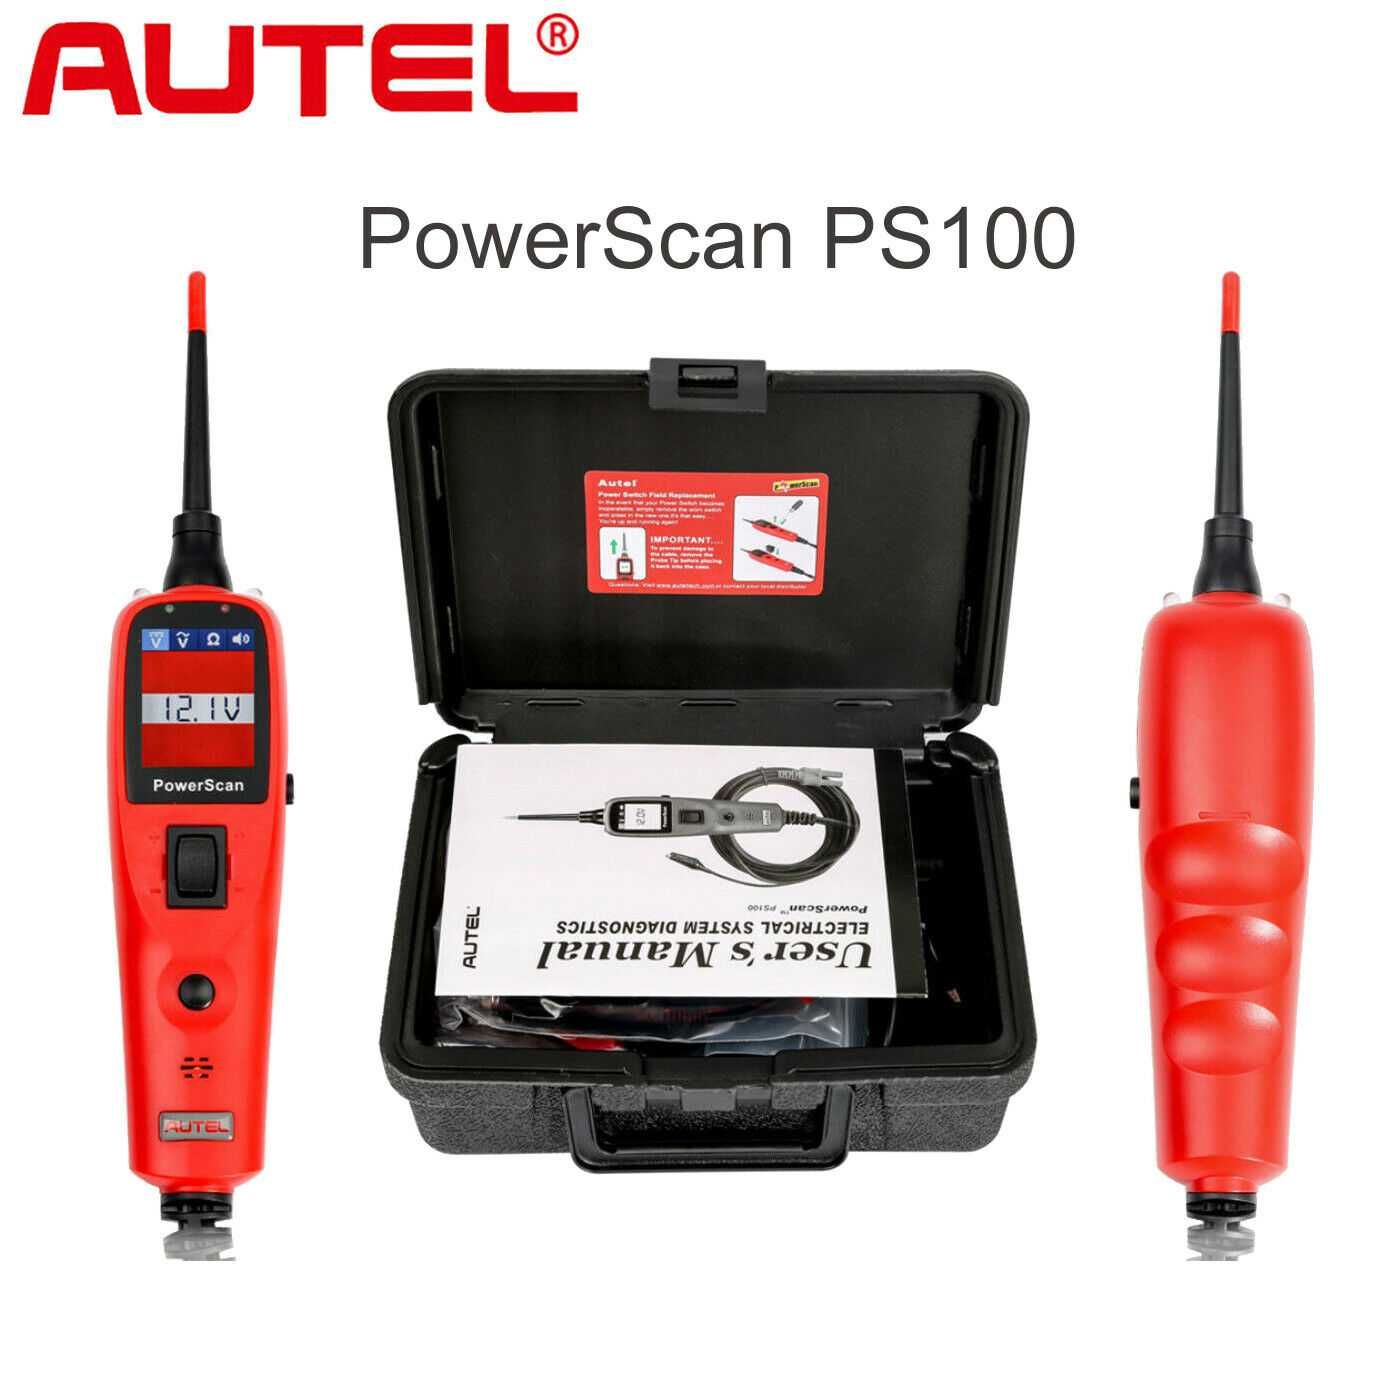 Máq. Teste circuitos elétricos auto Autel PowerScan PS100 - 12V/24V